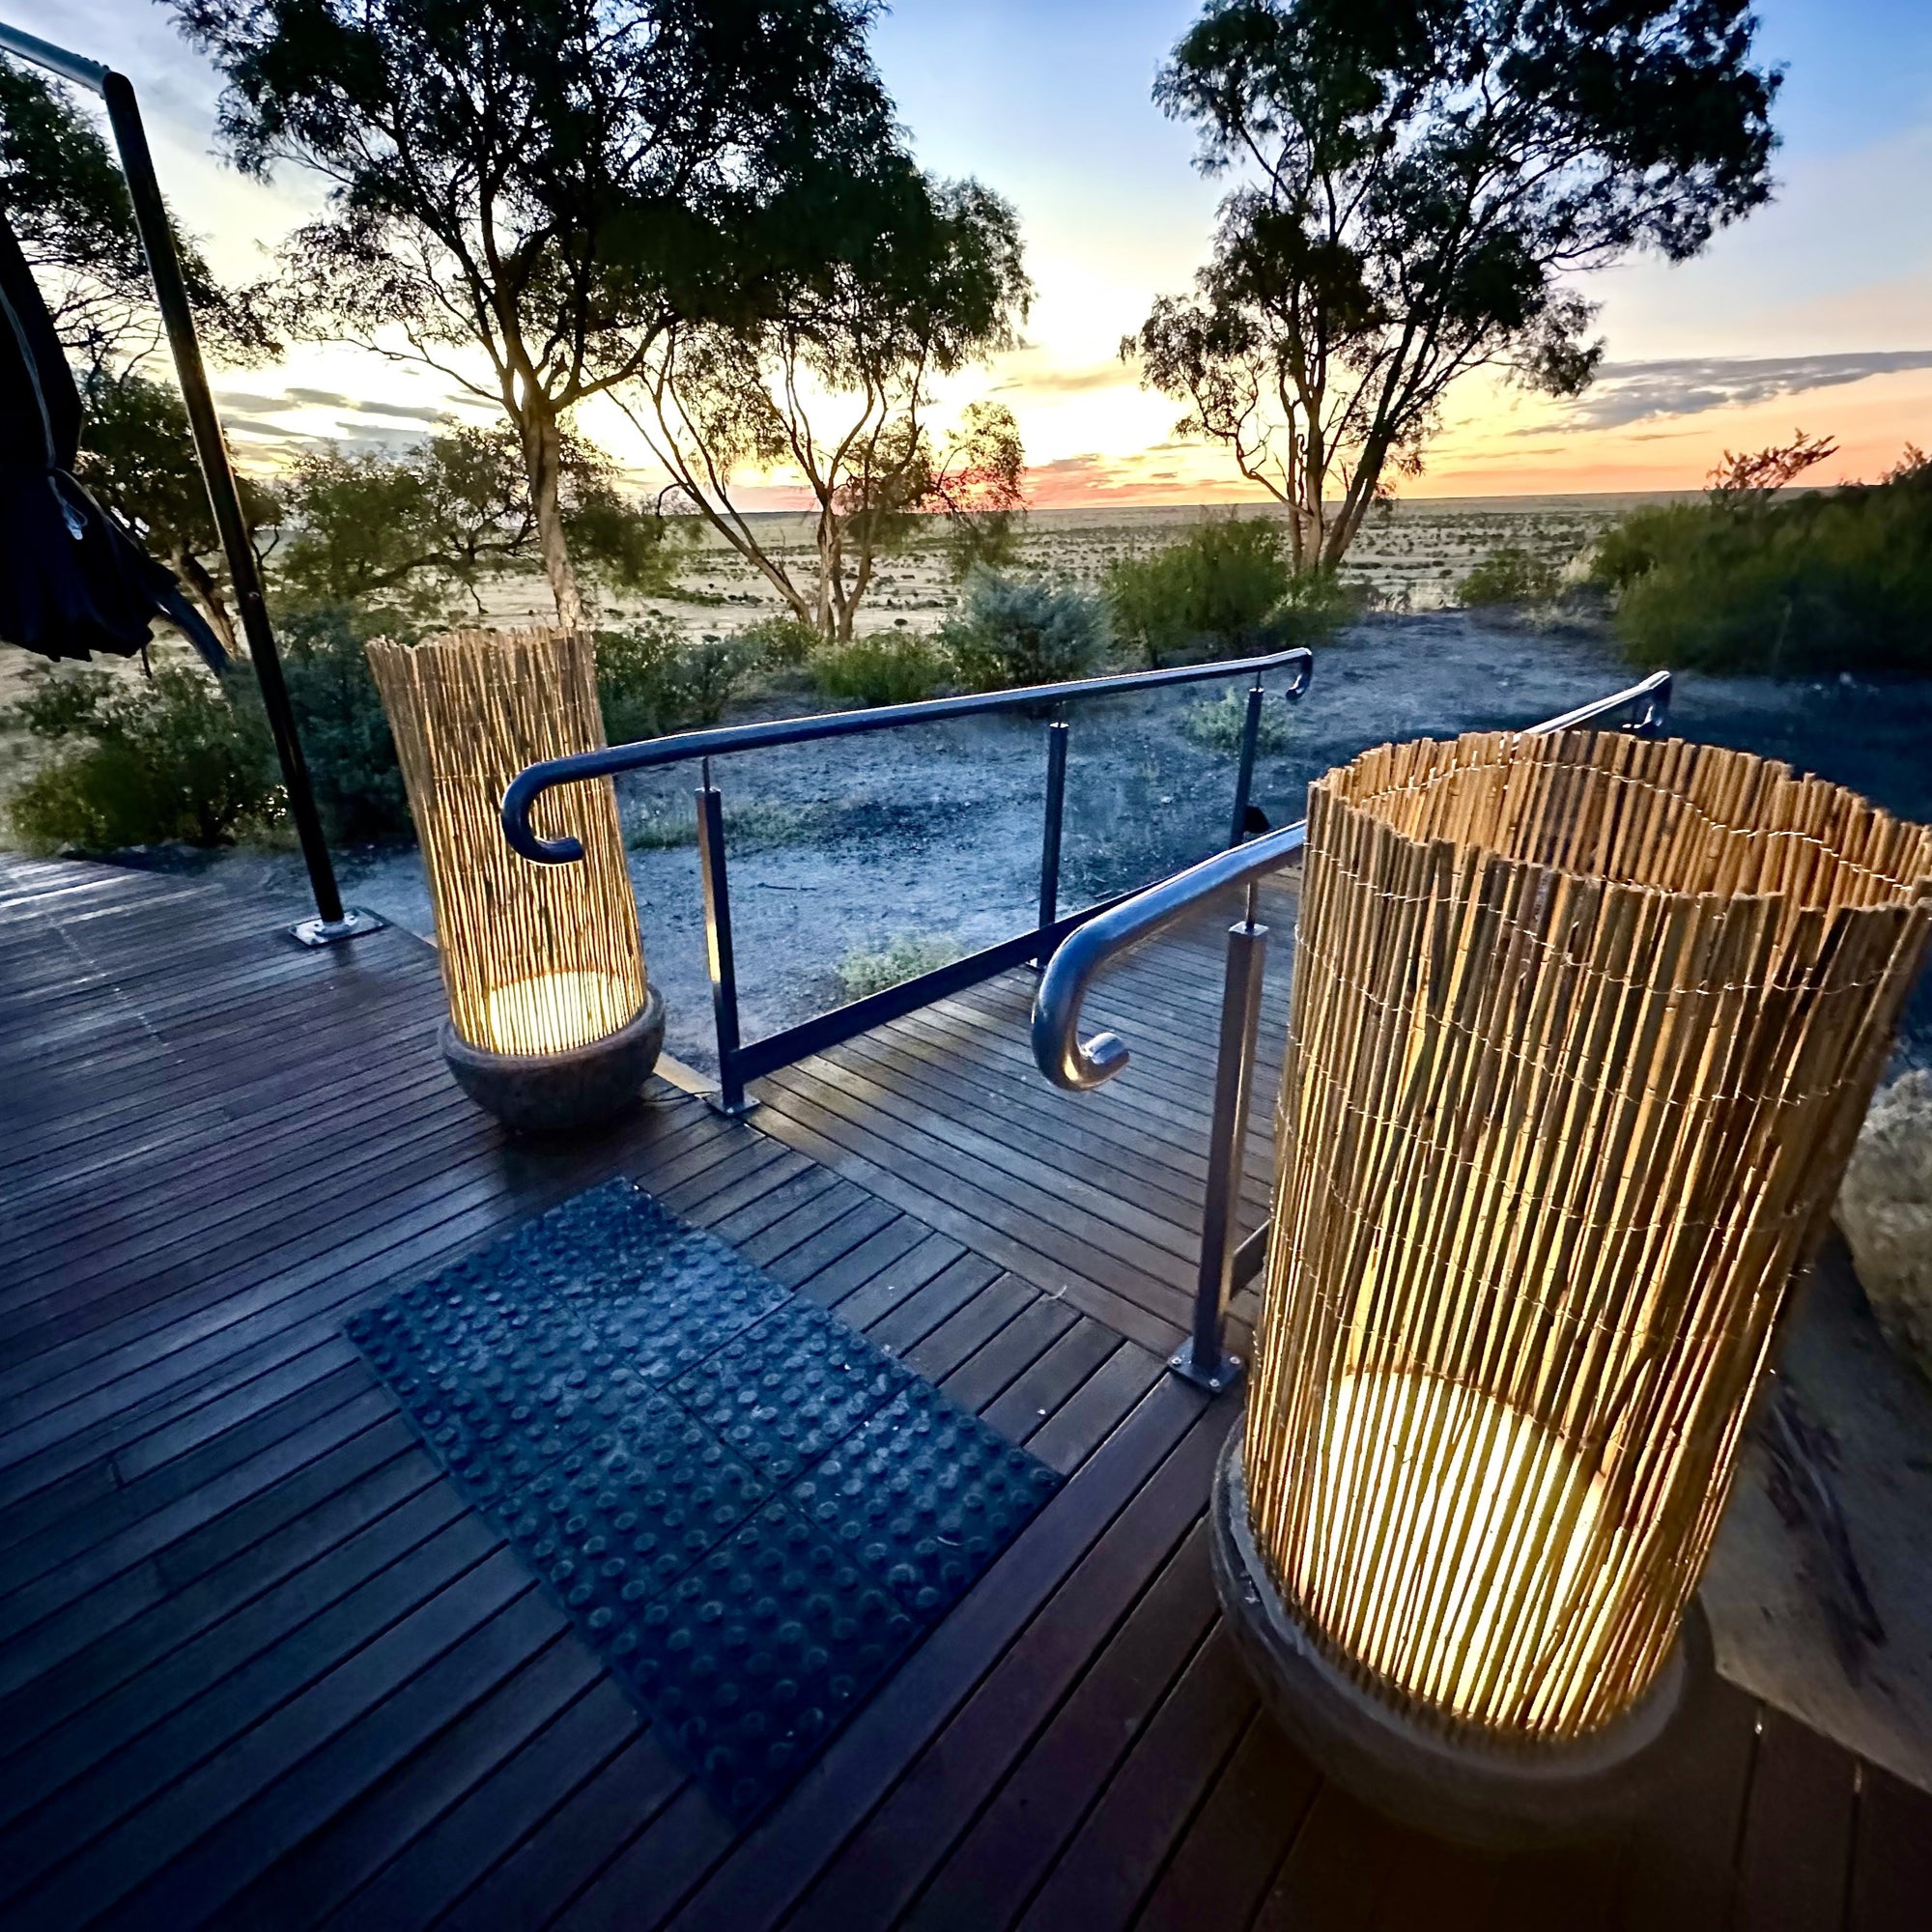 Rangelands Outback Camp Light Pots